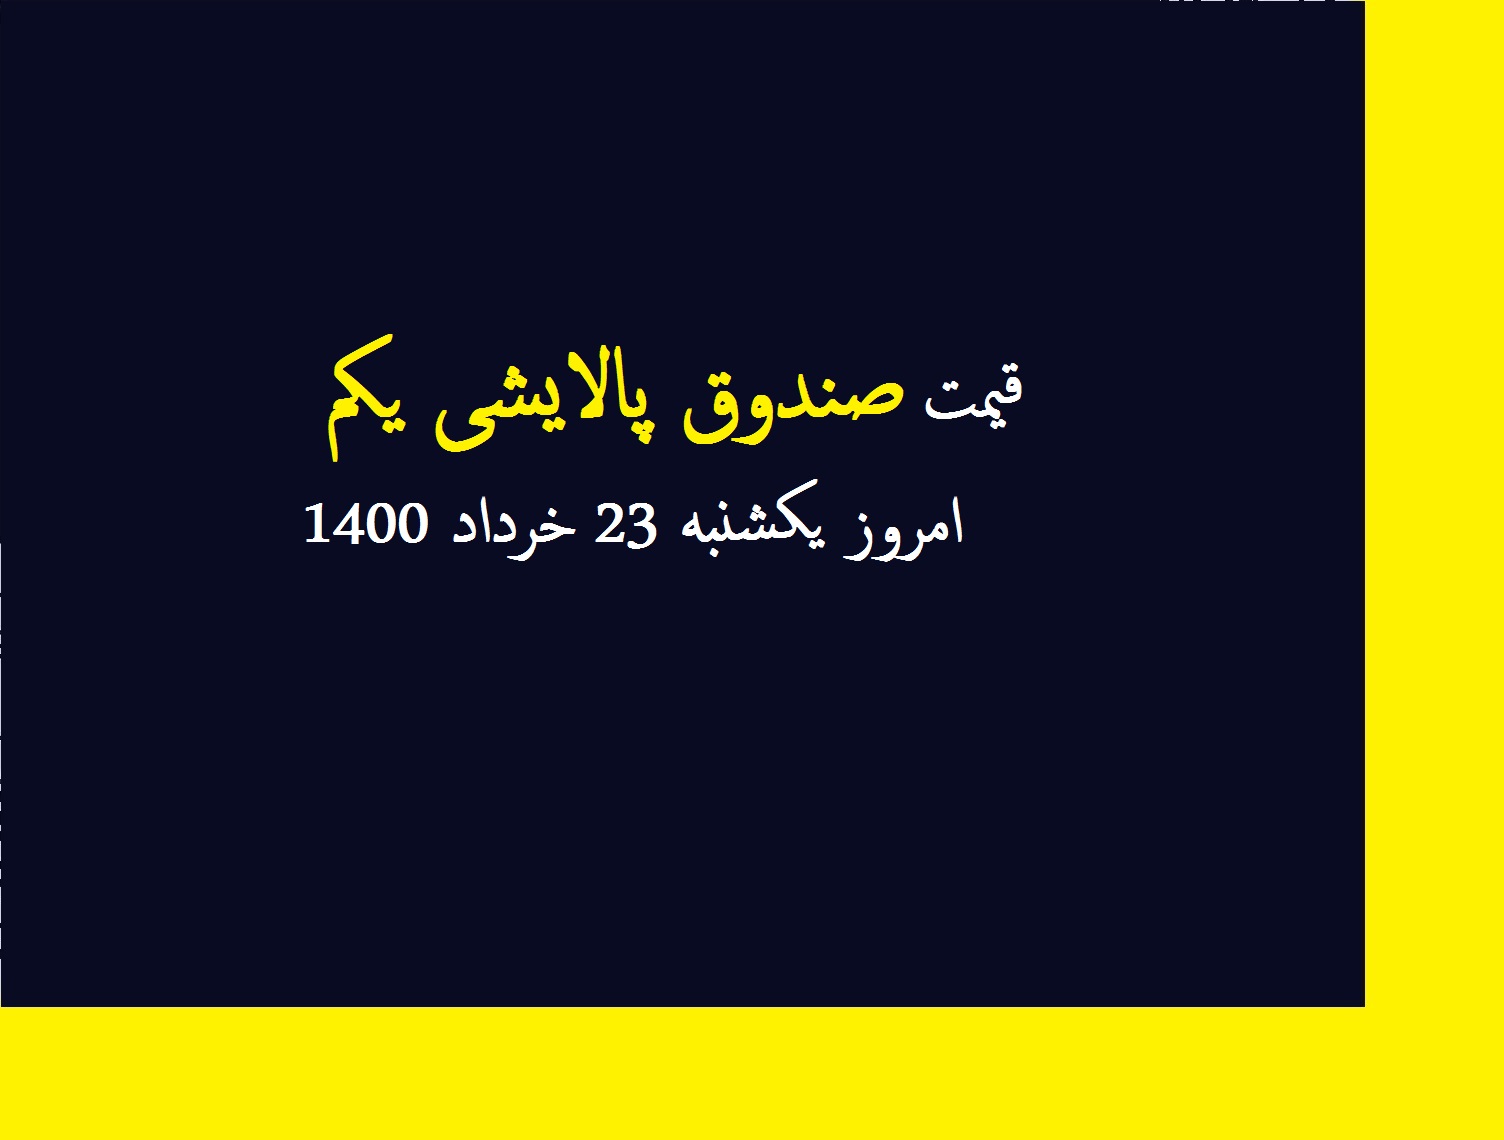 قیمت صندوق پالایشی یکم امروز یکشنبه 23 خرداد 1400